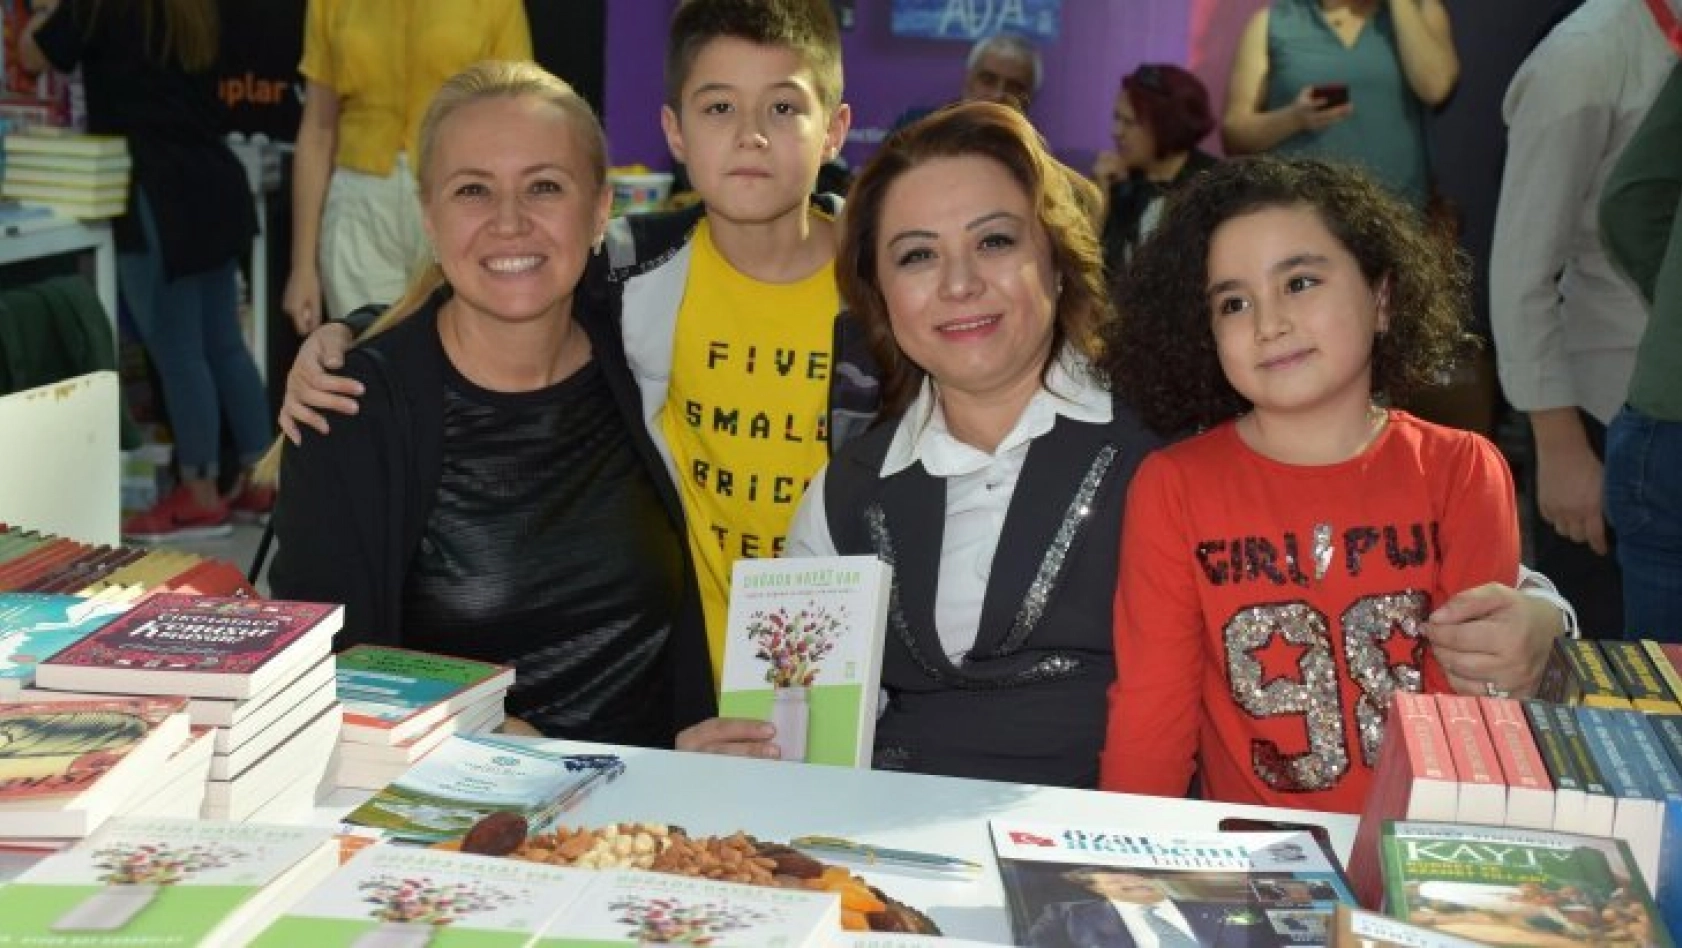 Rektör Karabulut, Ankara Kitap Fuarında İmza Gününe katıldı